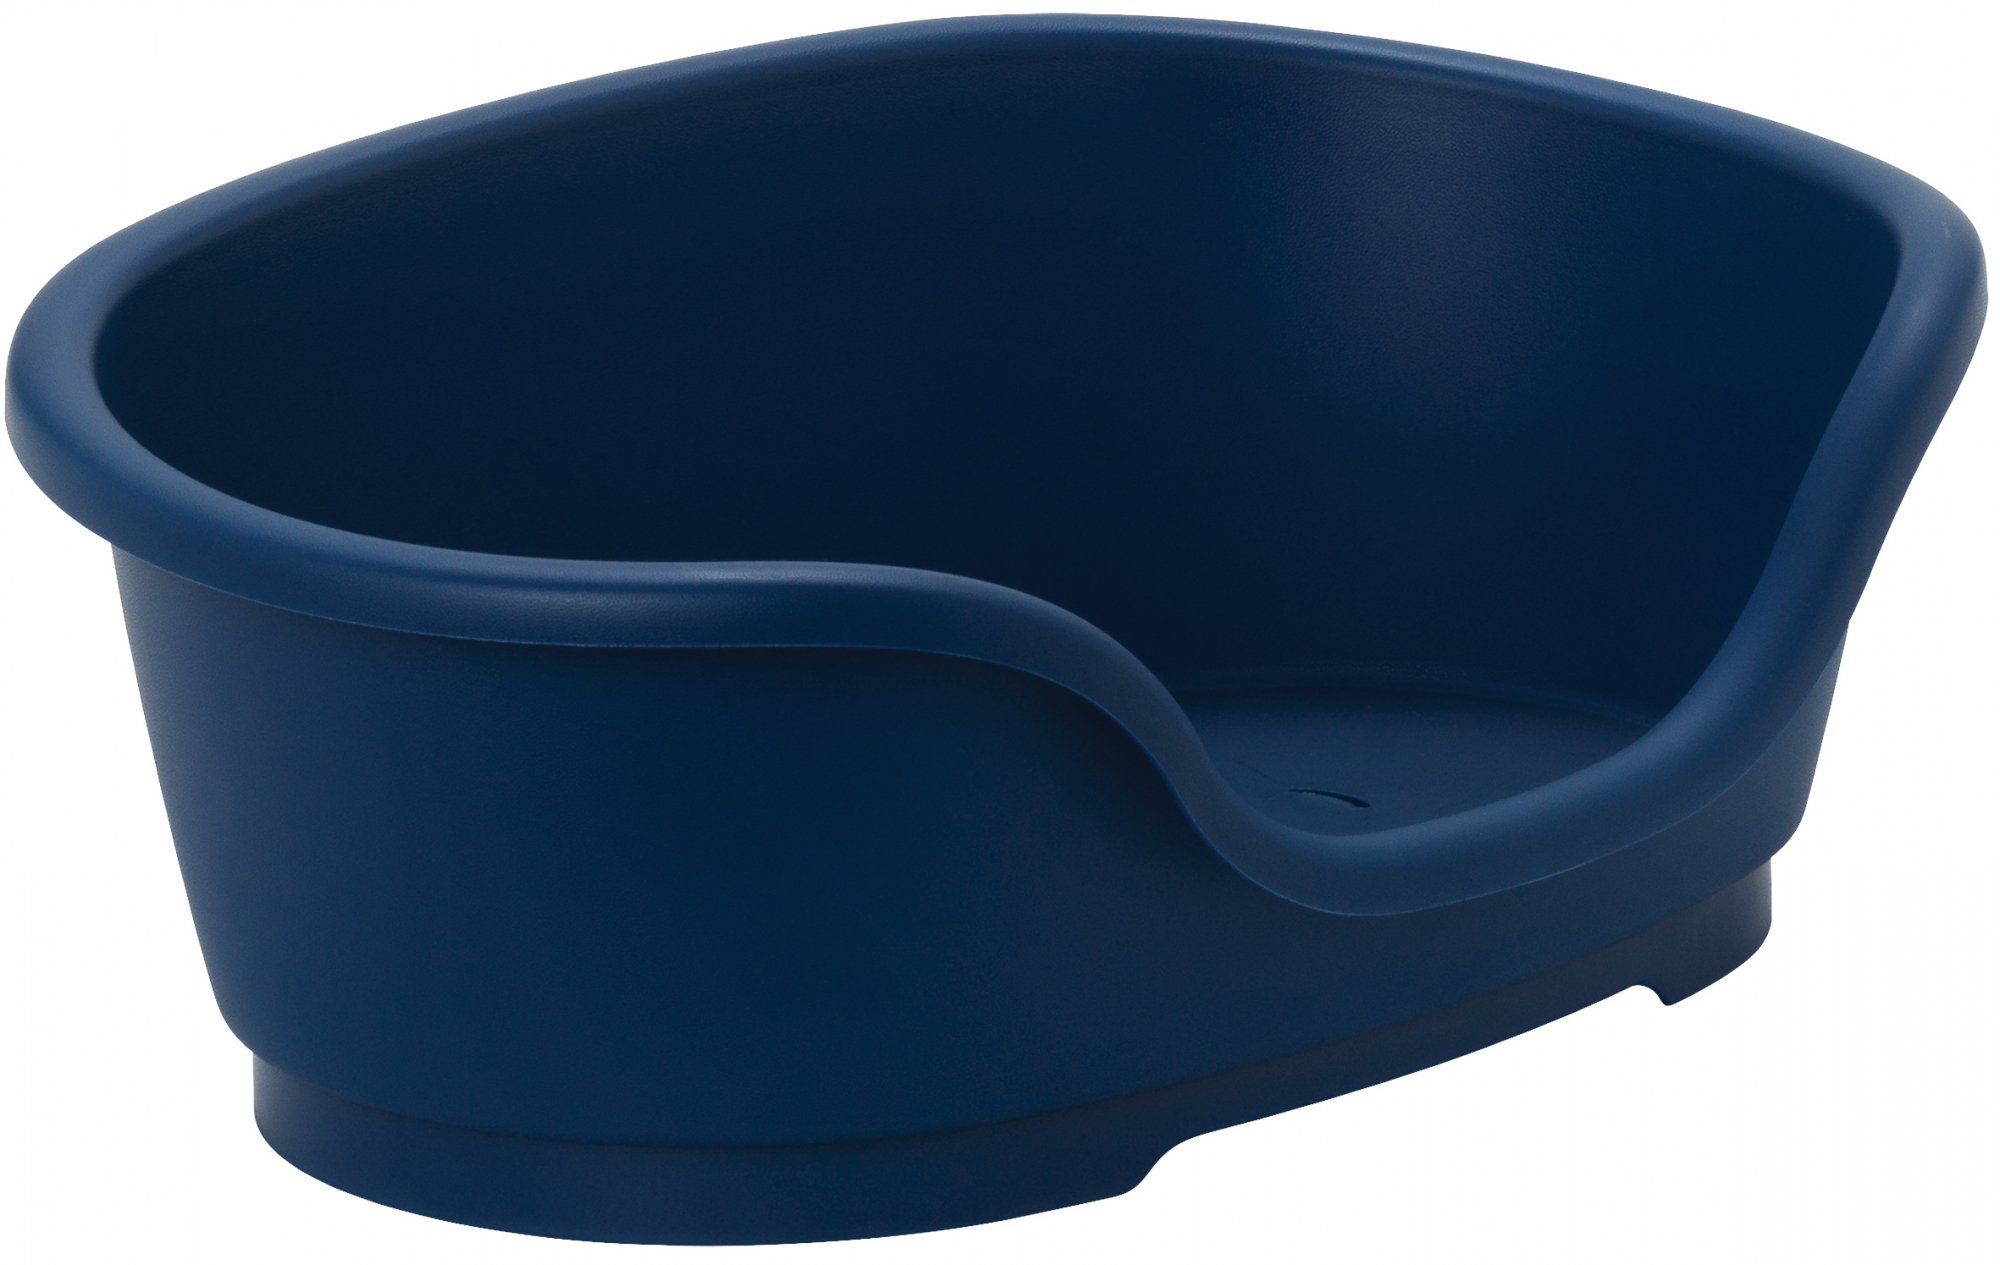 Kunststoffkörbchen Blau Moderna Domus - Verschiedene Größen verfügbar